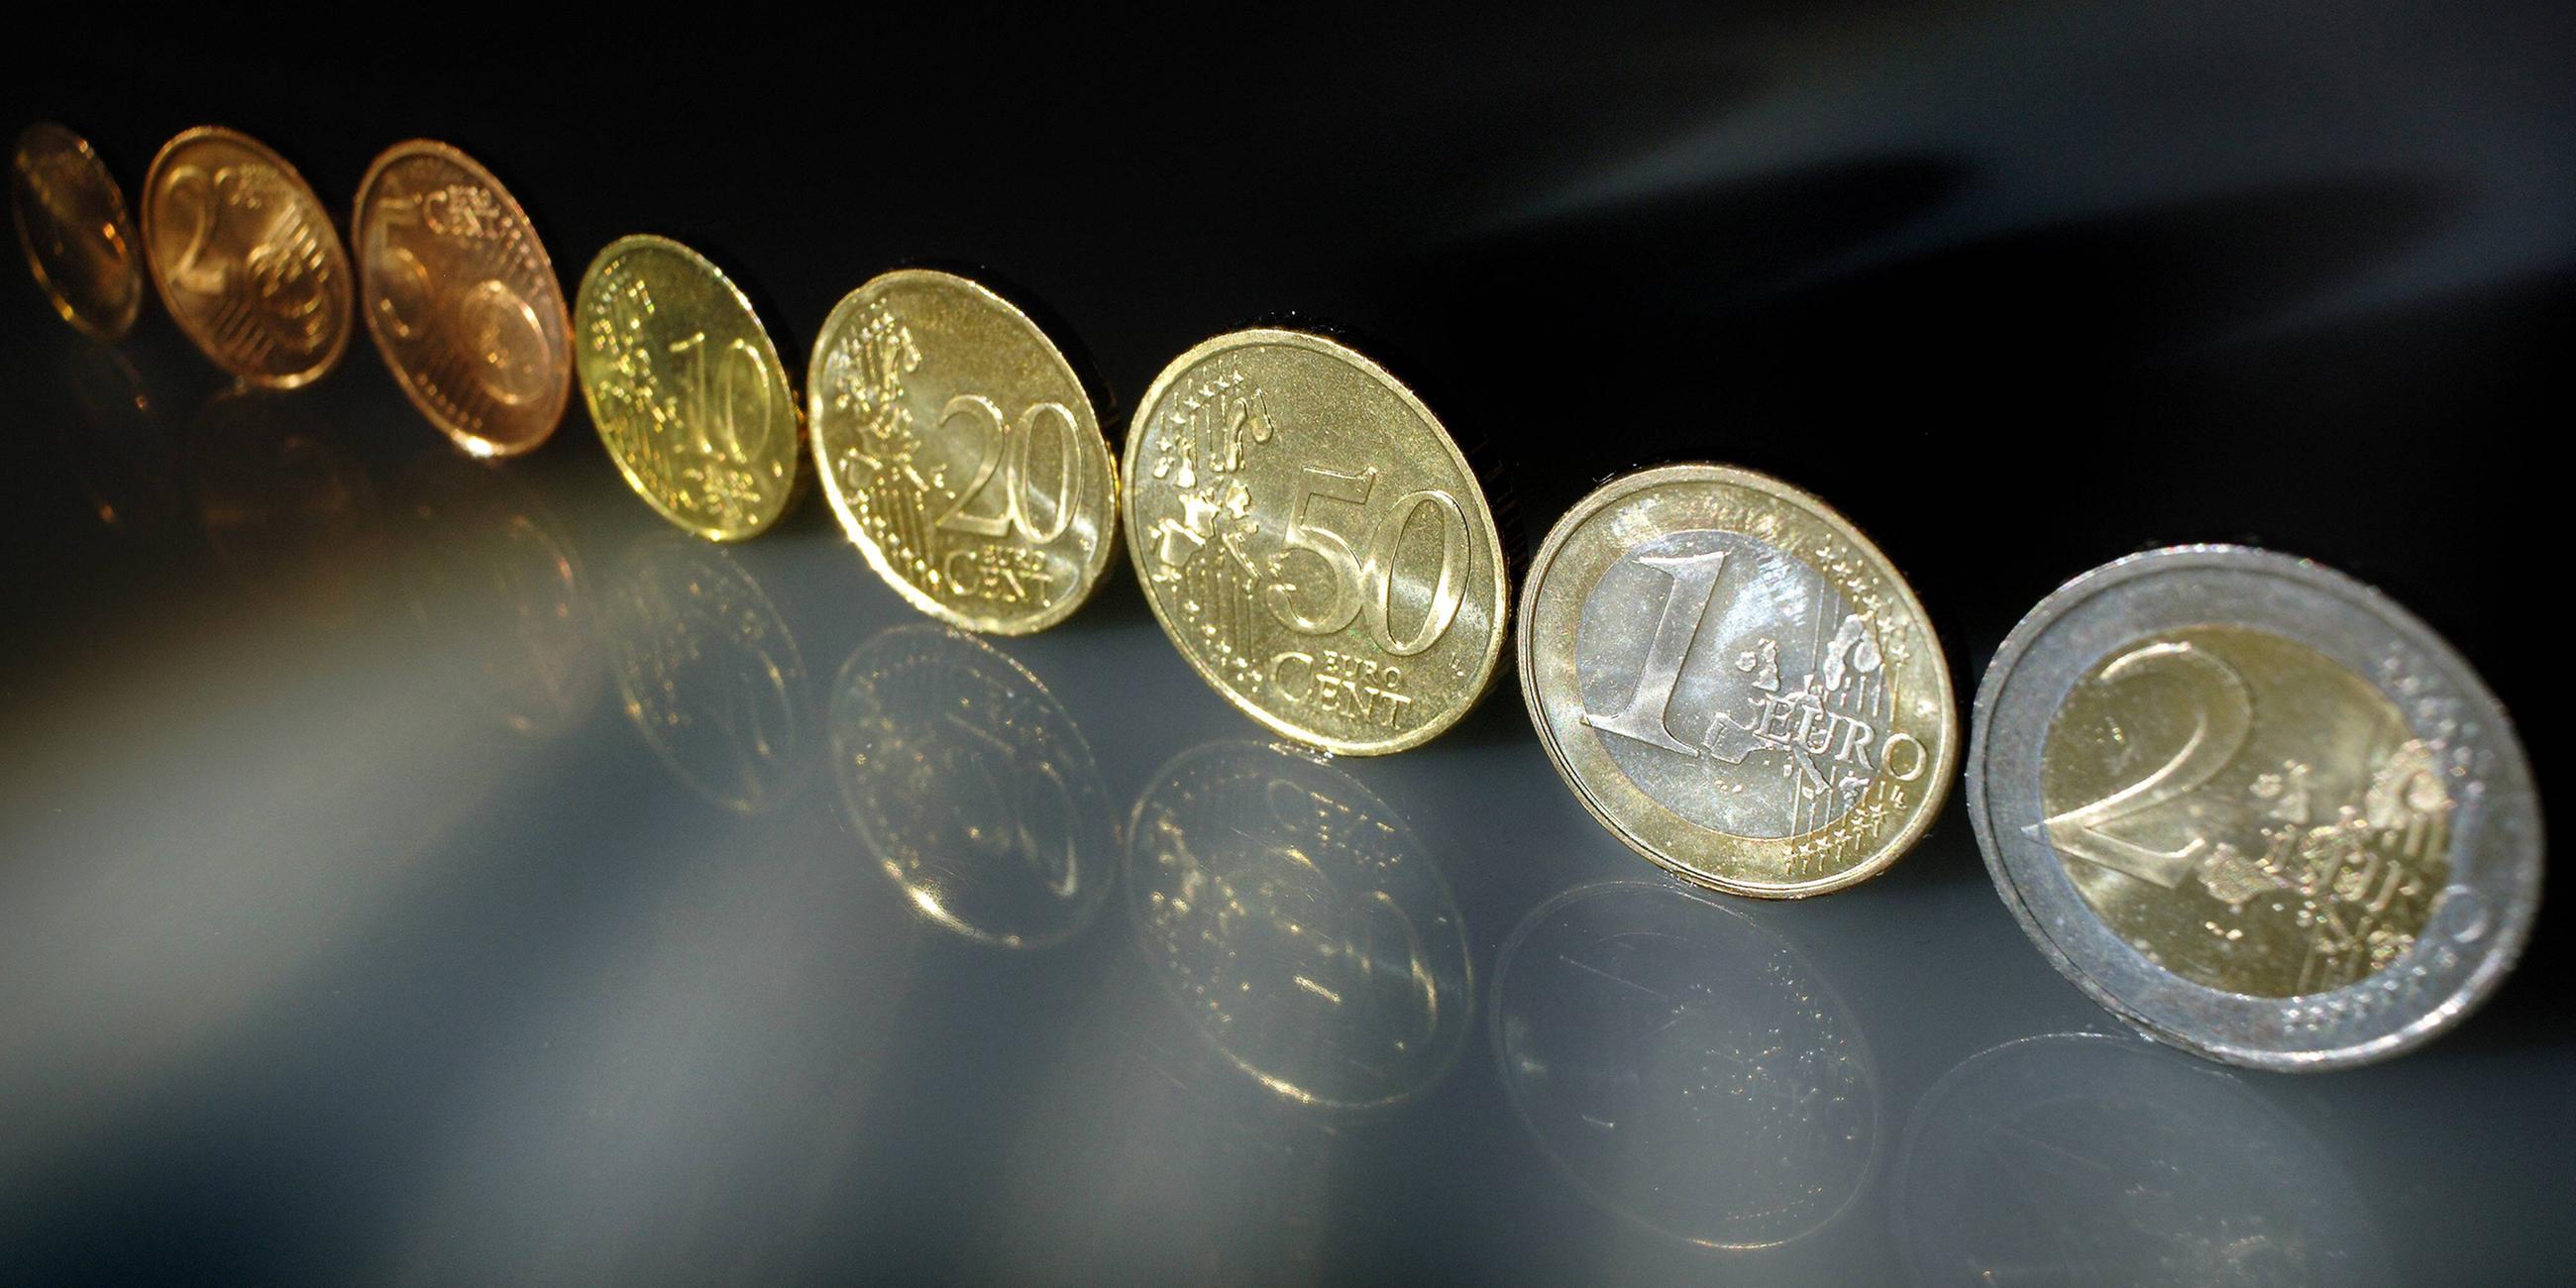 Euromünzen in einer Reihe